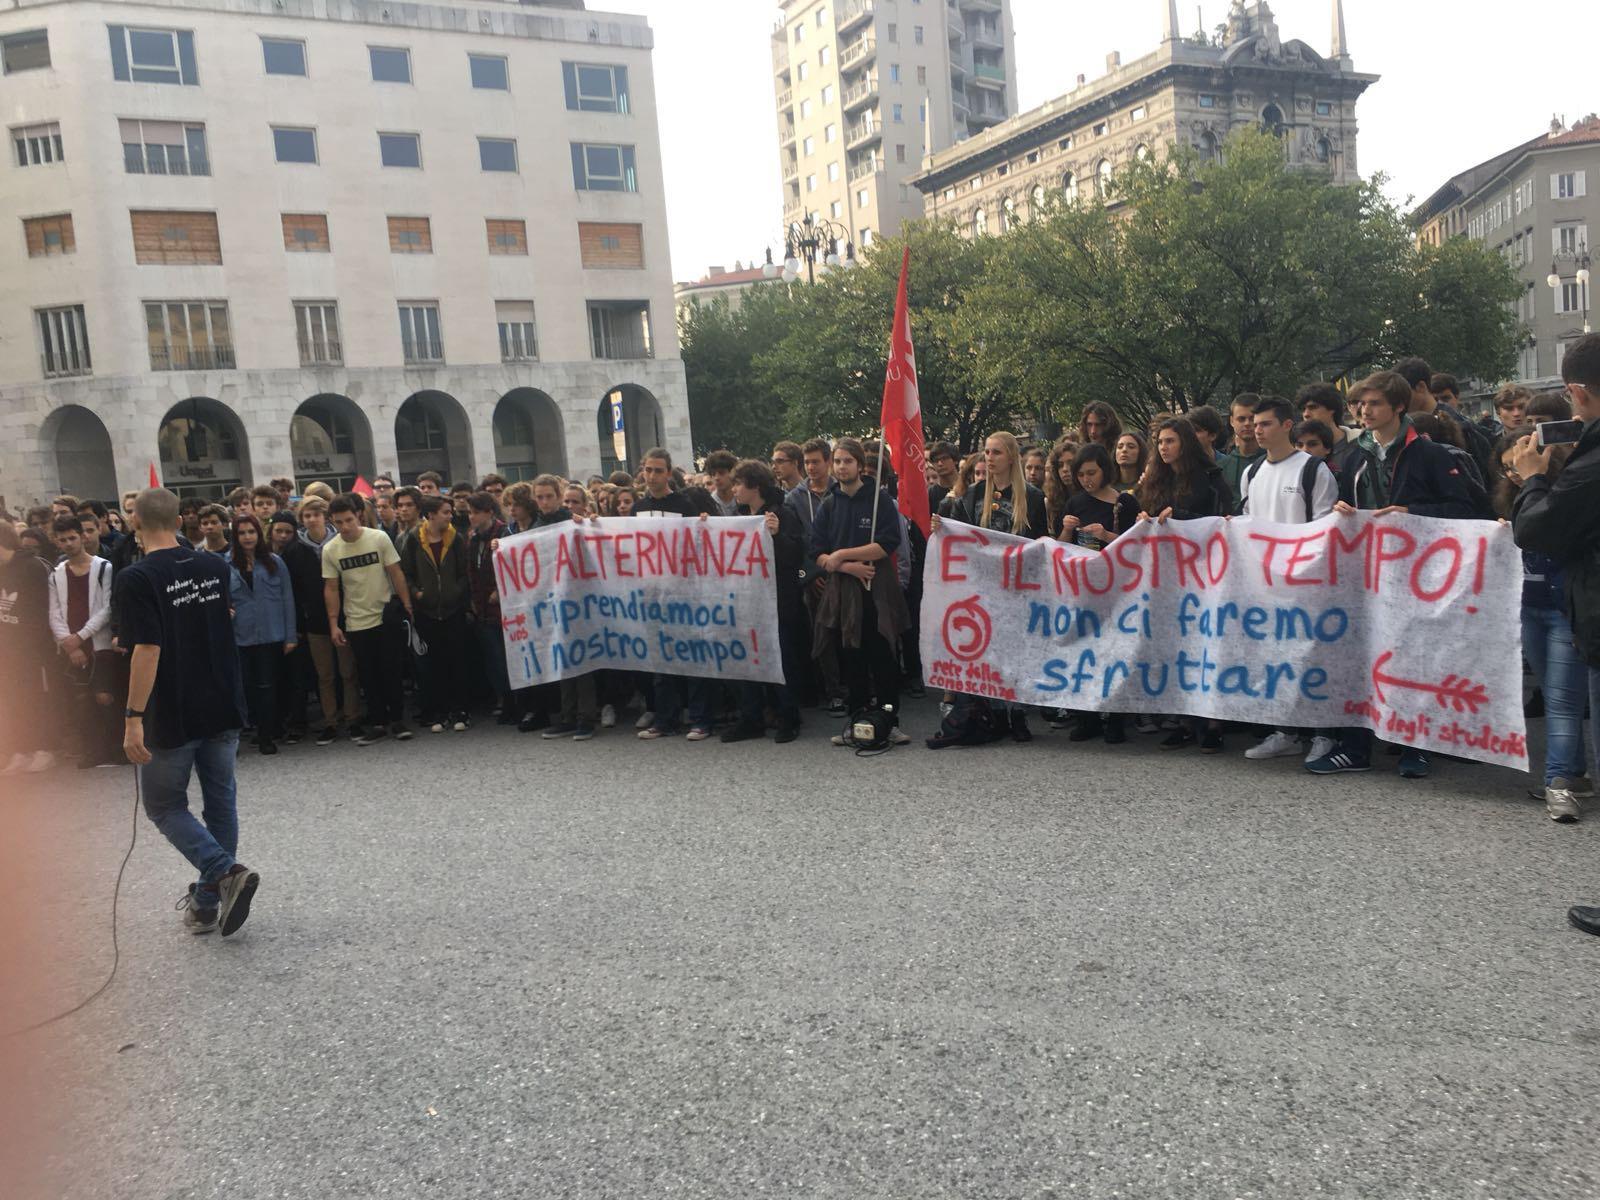 "Non ci faremo sfruttare" scrivono sugli striscioni i ragazzi a Trieste